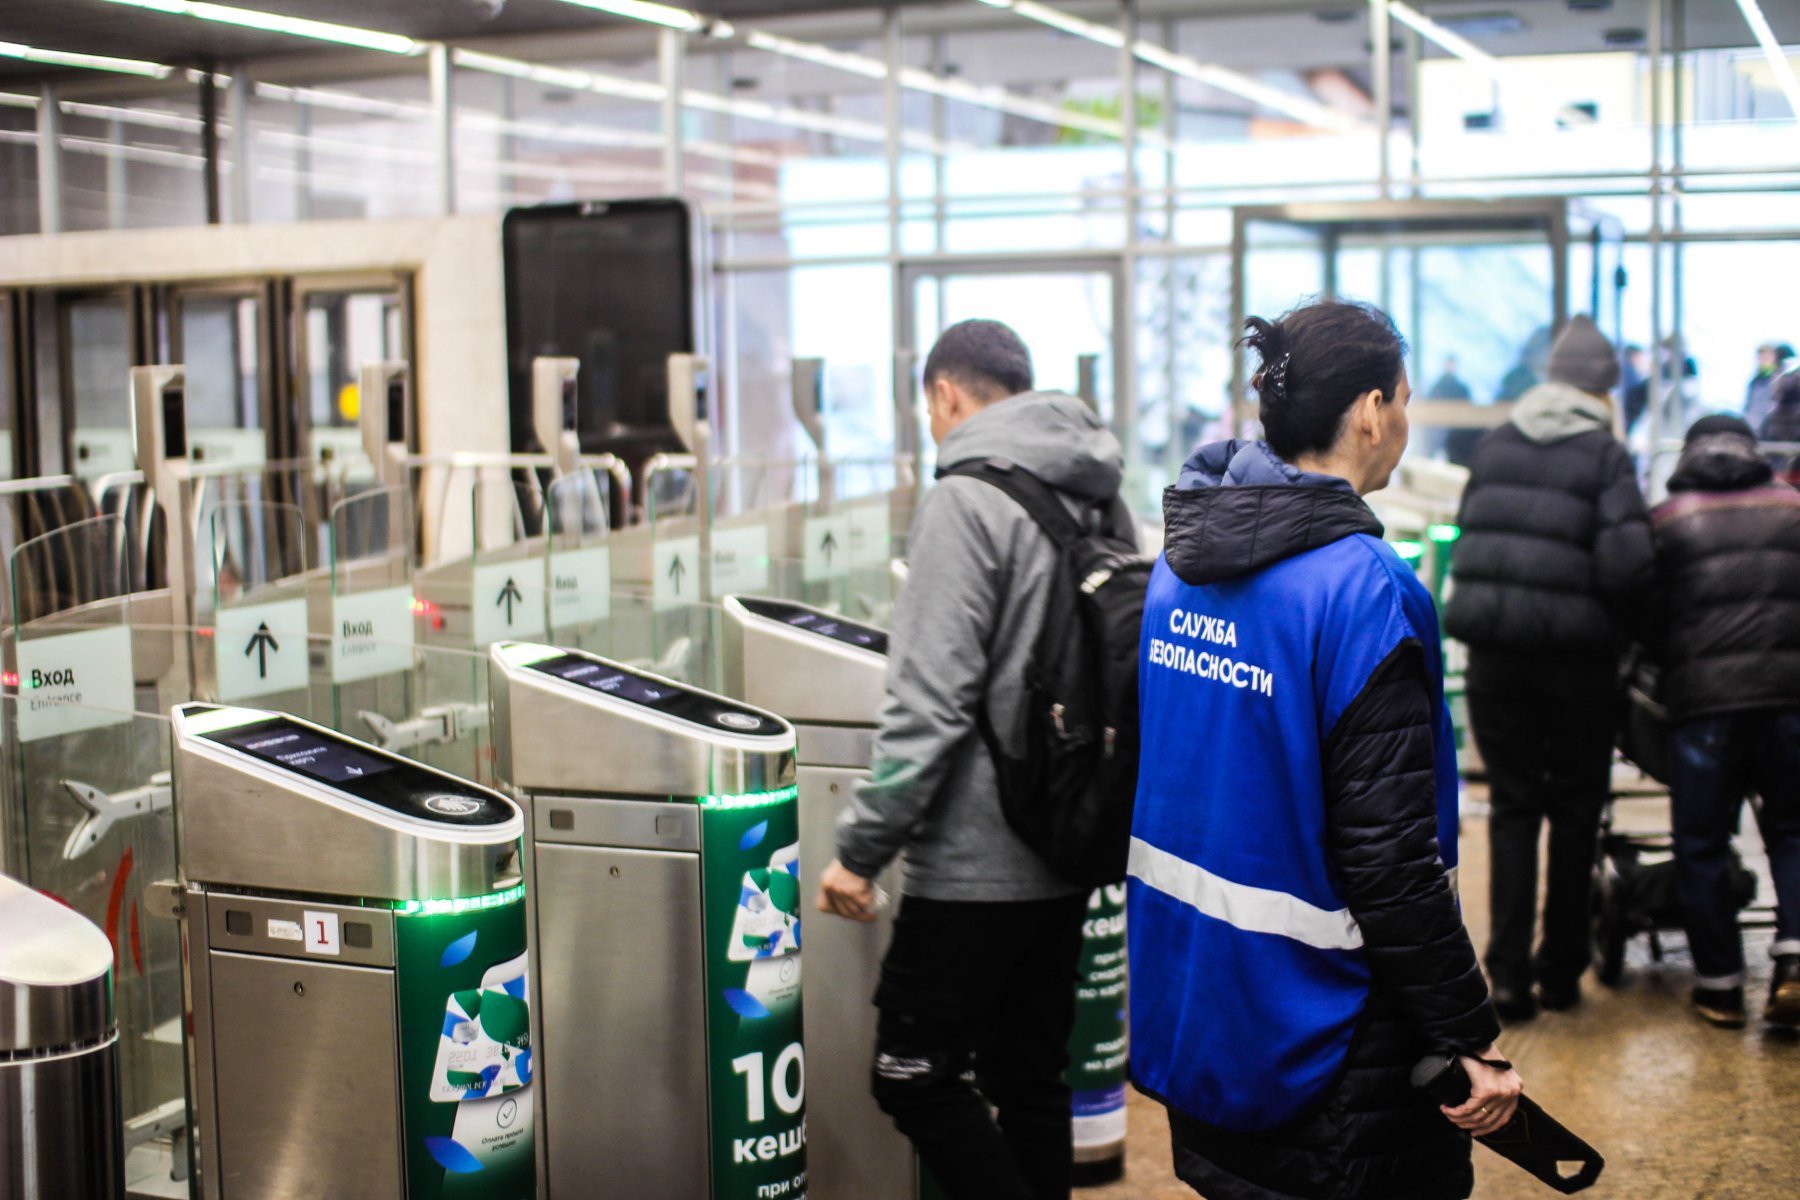 Более 6 тысяч подозреваемых поймали в московском метро с помощью системы распознавания лиц